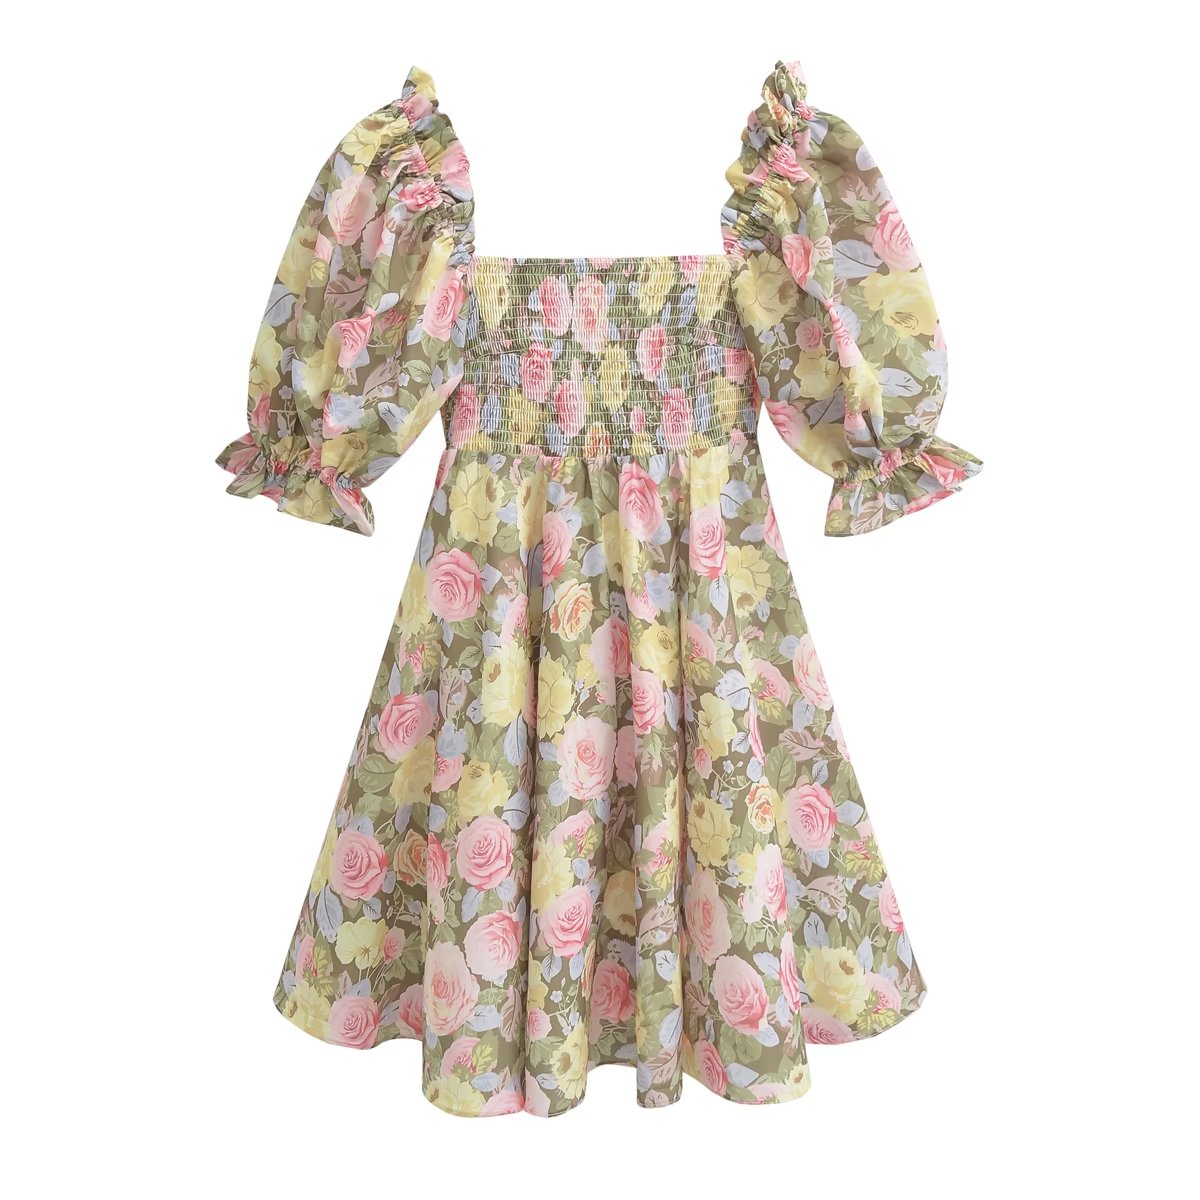 Summer Floral Elegant Colorful Rose Print Dress Holiday Dress